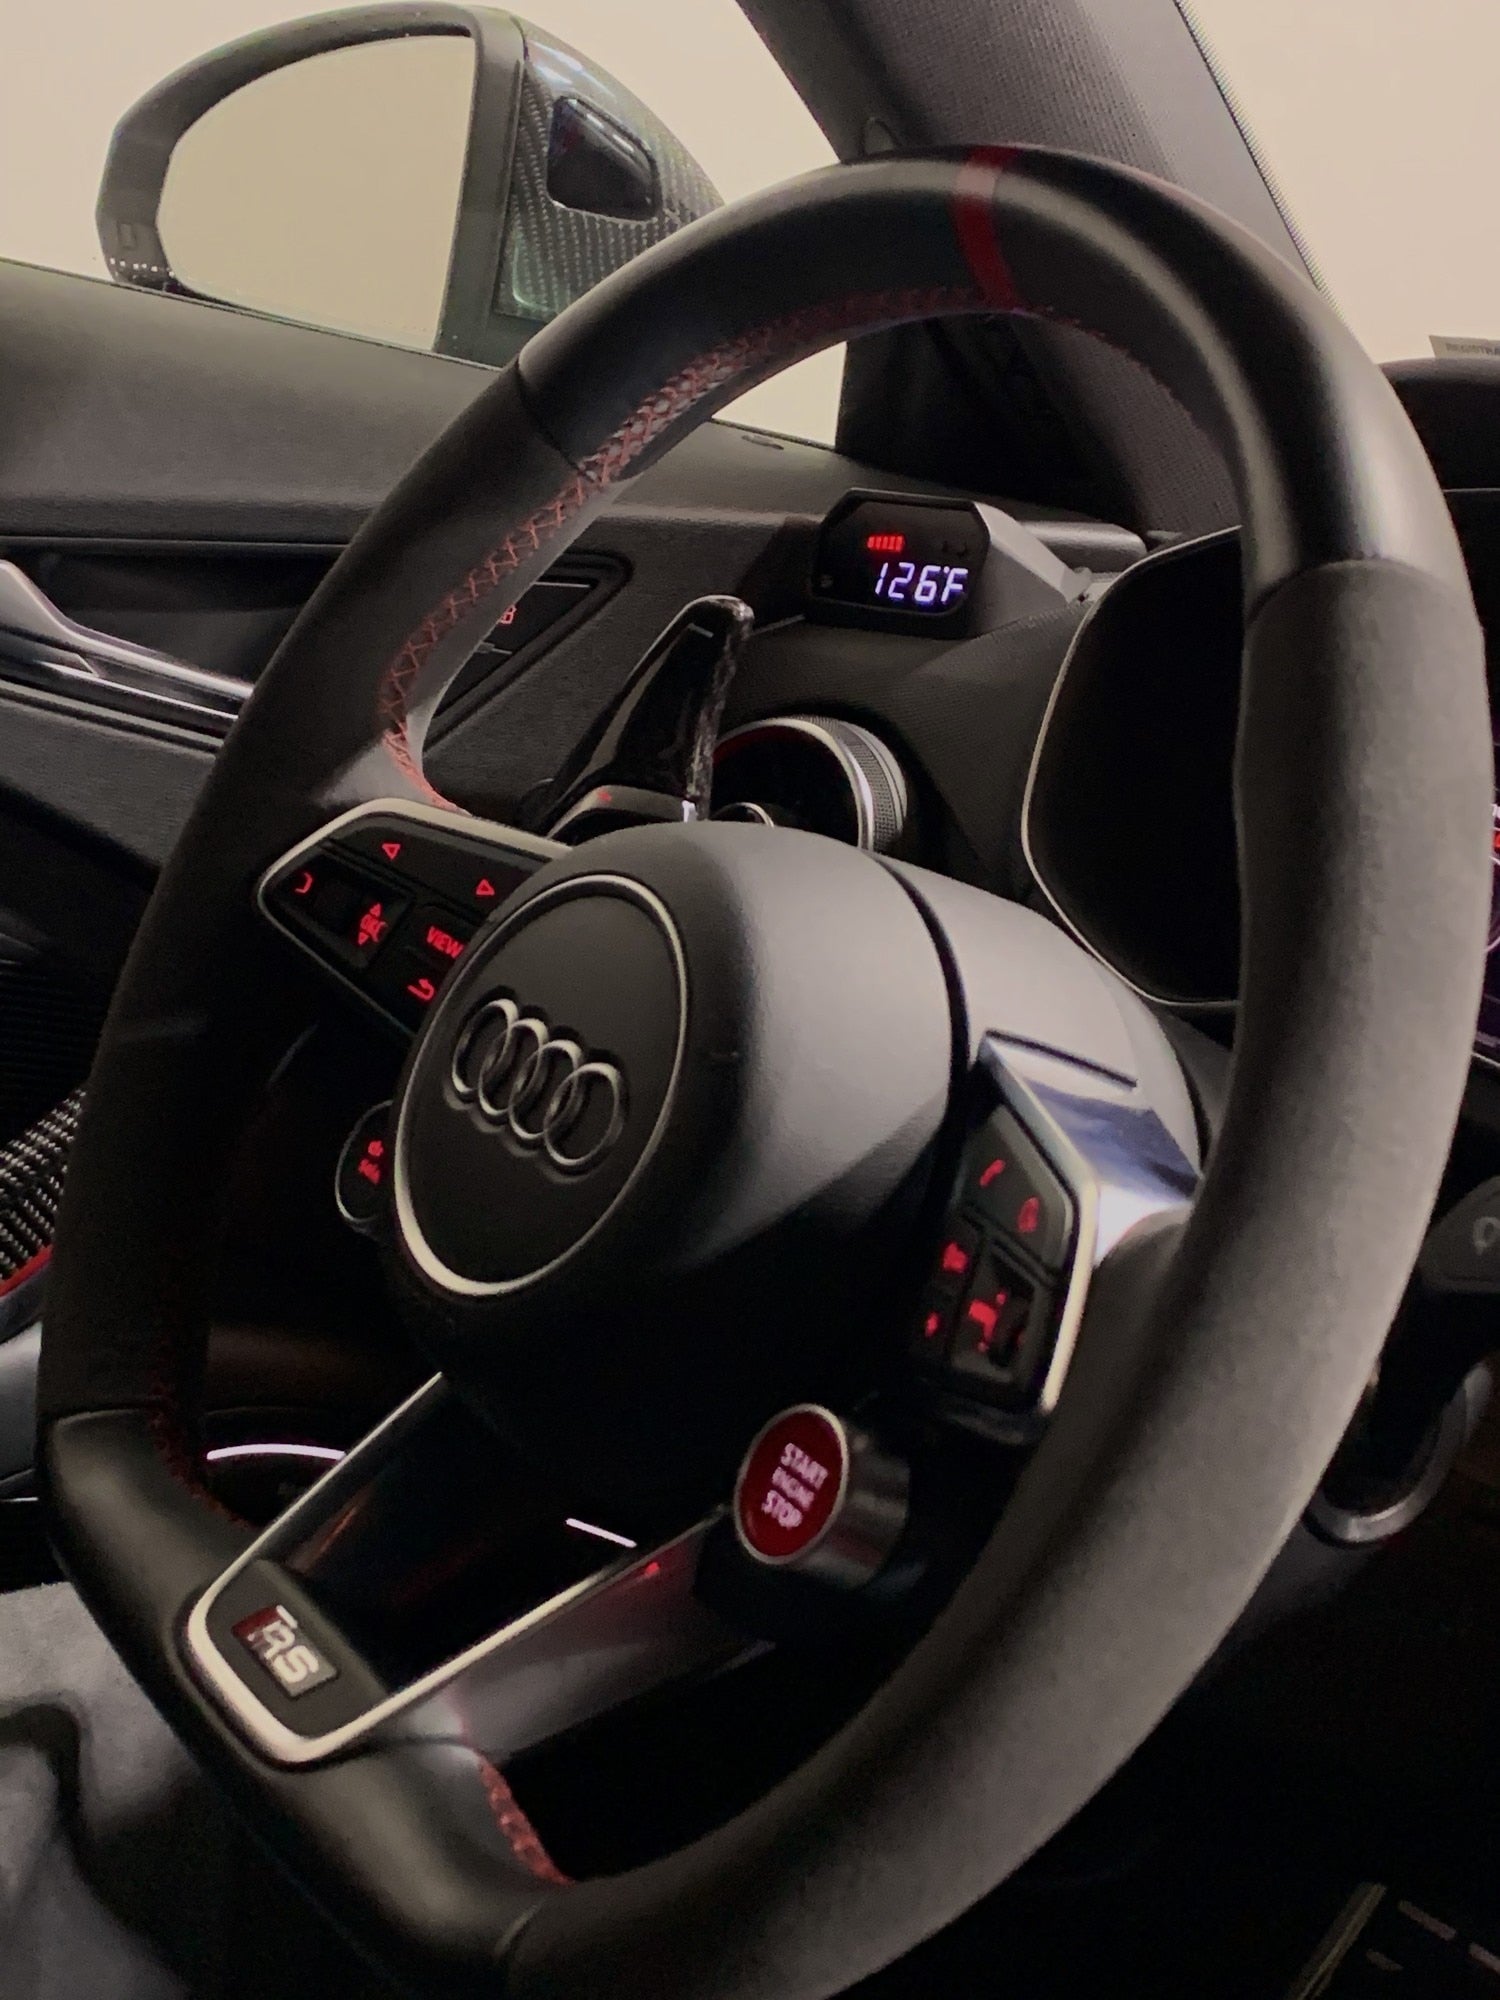 P3 V3 OBD2 - Audi 8S Gauge (2015+)